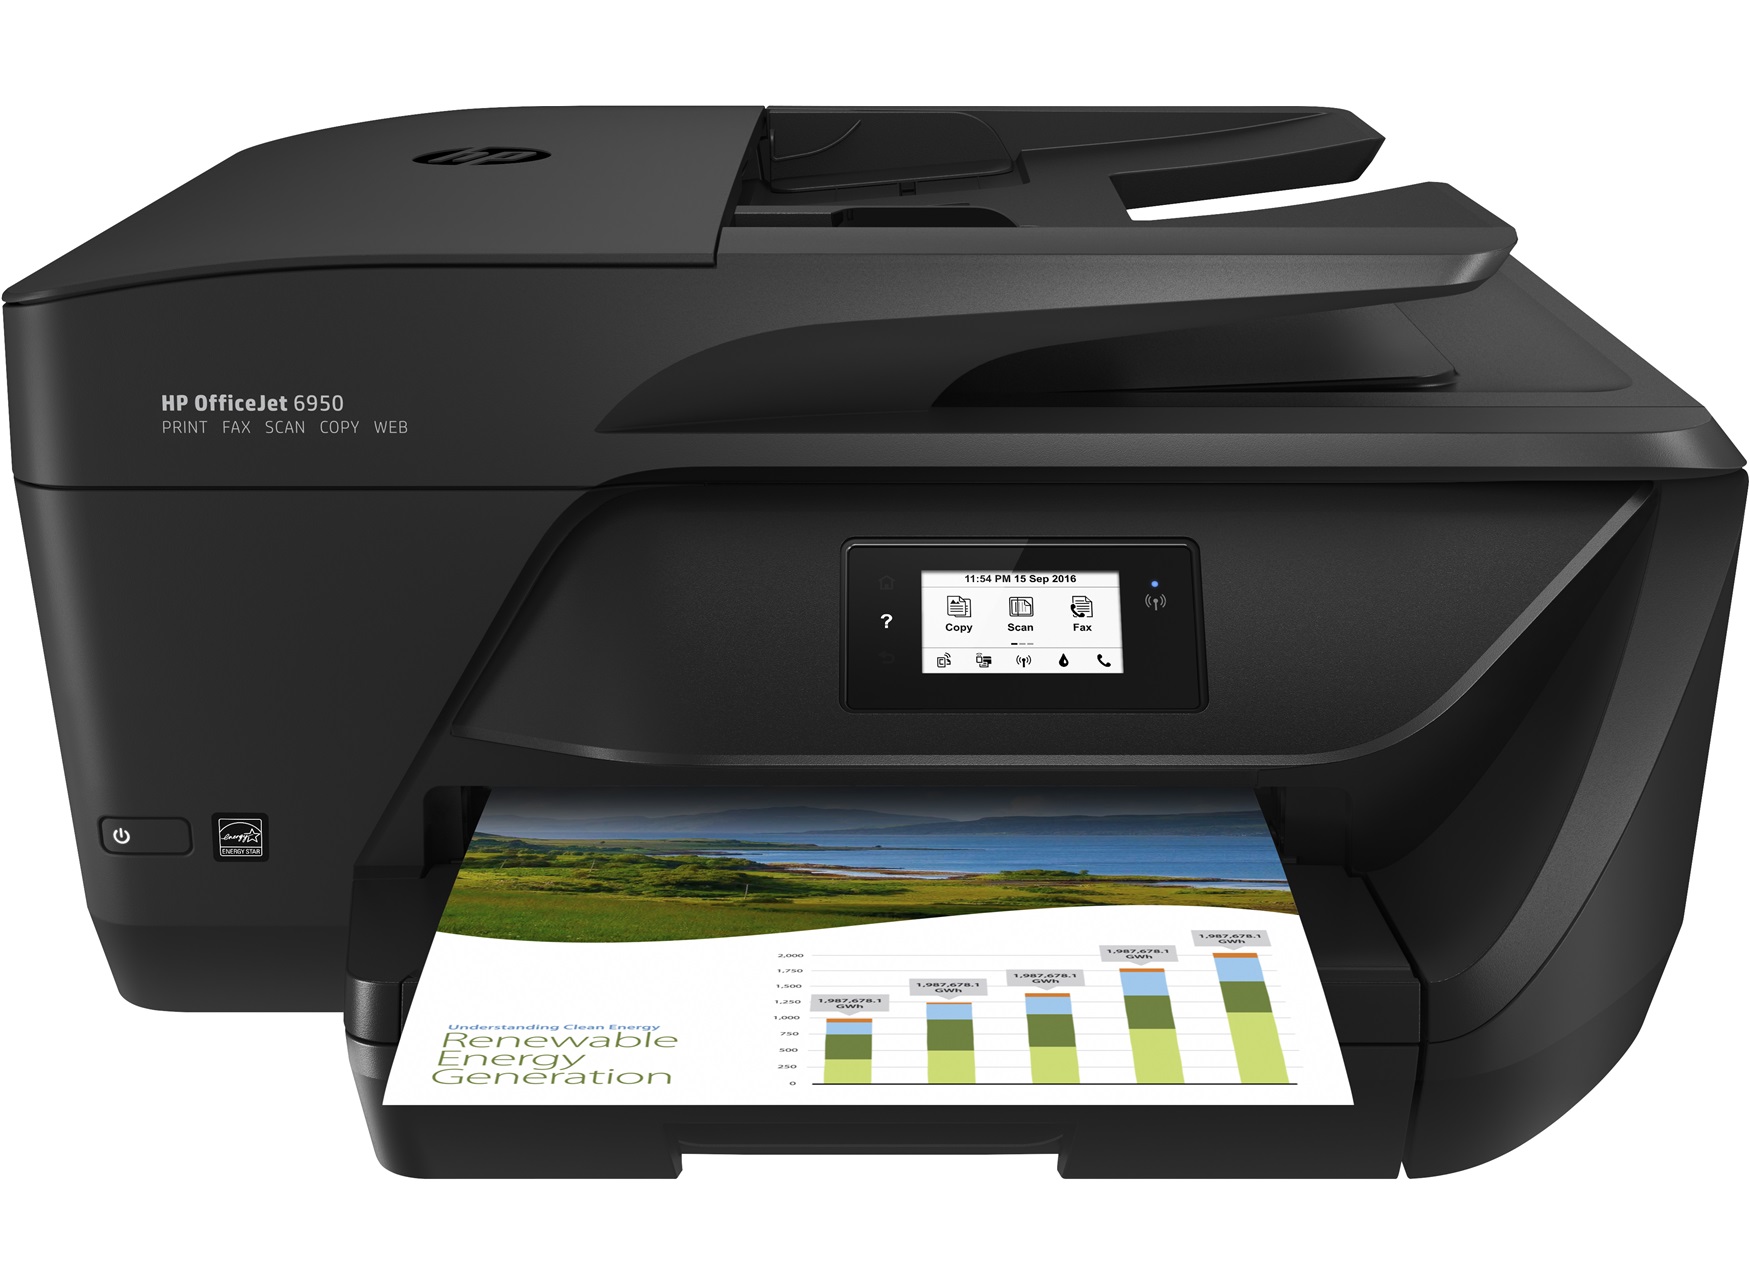 Printer HP OfficeJet 6950, snižen s 1439,55 kuna na 509 kuna<br><br>Ovaj HP-ov kombinirani printer i skener nudi mnogo bolje performanse nego ova snižena cijena možda sugerira. Riječ je o tintnom pisaču u boji, na kojega se može spojiti putem Wi-Fija, neovisno o tome želite li printati s računala ili mobitela. Dakle, printer možete slobodno sakriti negdje van vidokruga, ako ga ne koristite prečesto. Skener mu je također sasvim solidan, s rezolucijom od 4800×1200 piksela.<br><br>Dostupn je u ponudi <a href="https://www.mall.hr/uredjaji-visefunkcijski/hp-pisac-officejet-6950-all-in-one-p4c78a"><b>Mall.hr</b></a>